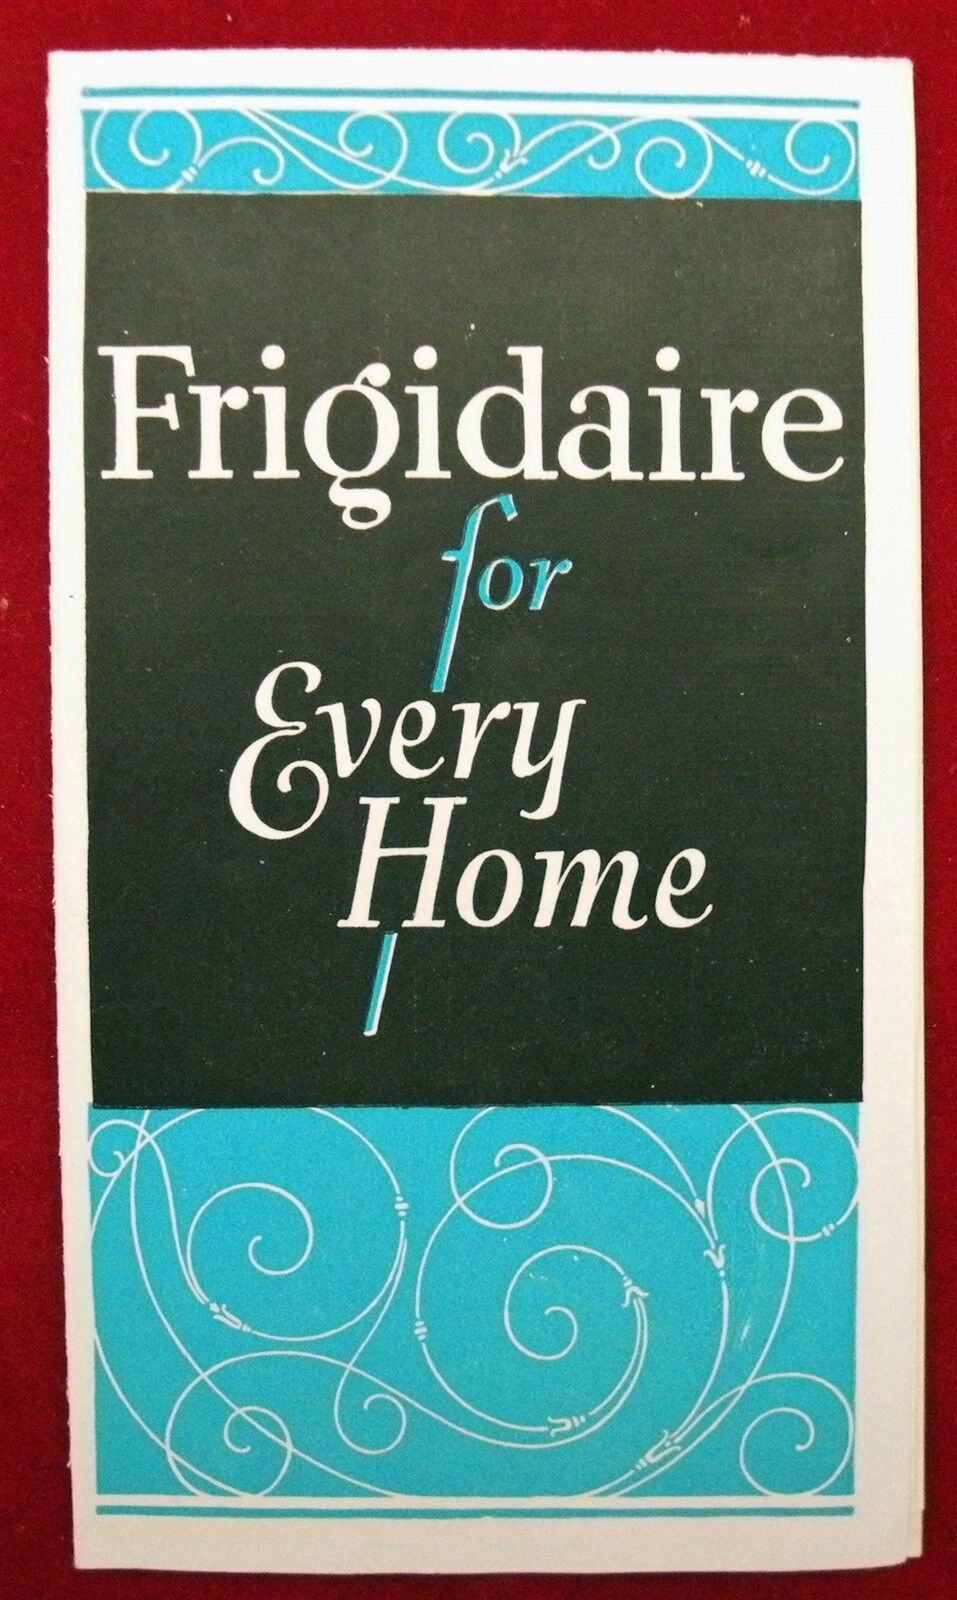 GM FRIGIDAIRE For Every Home Original Vintage Advertising Brochure 2-27